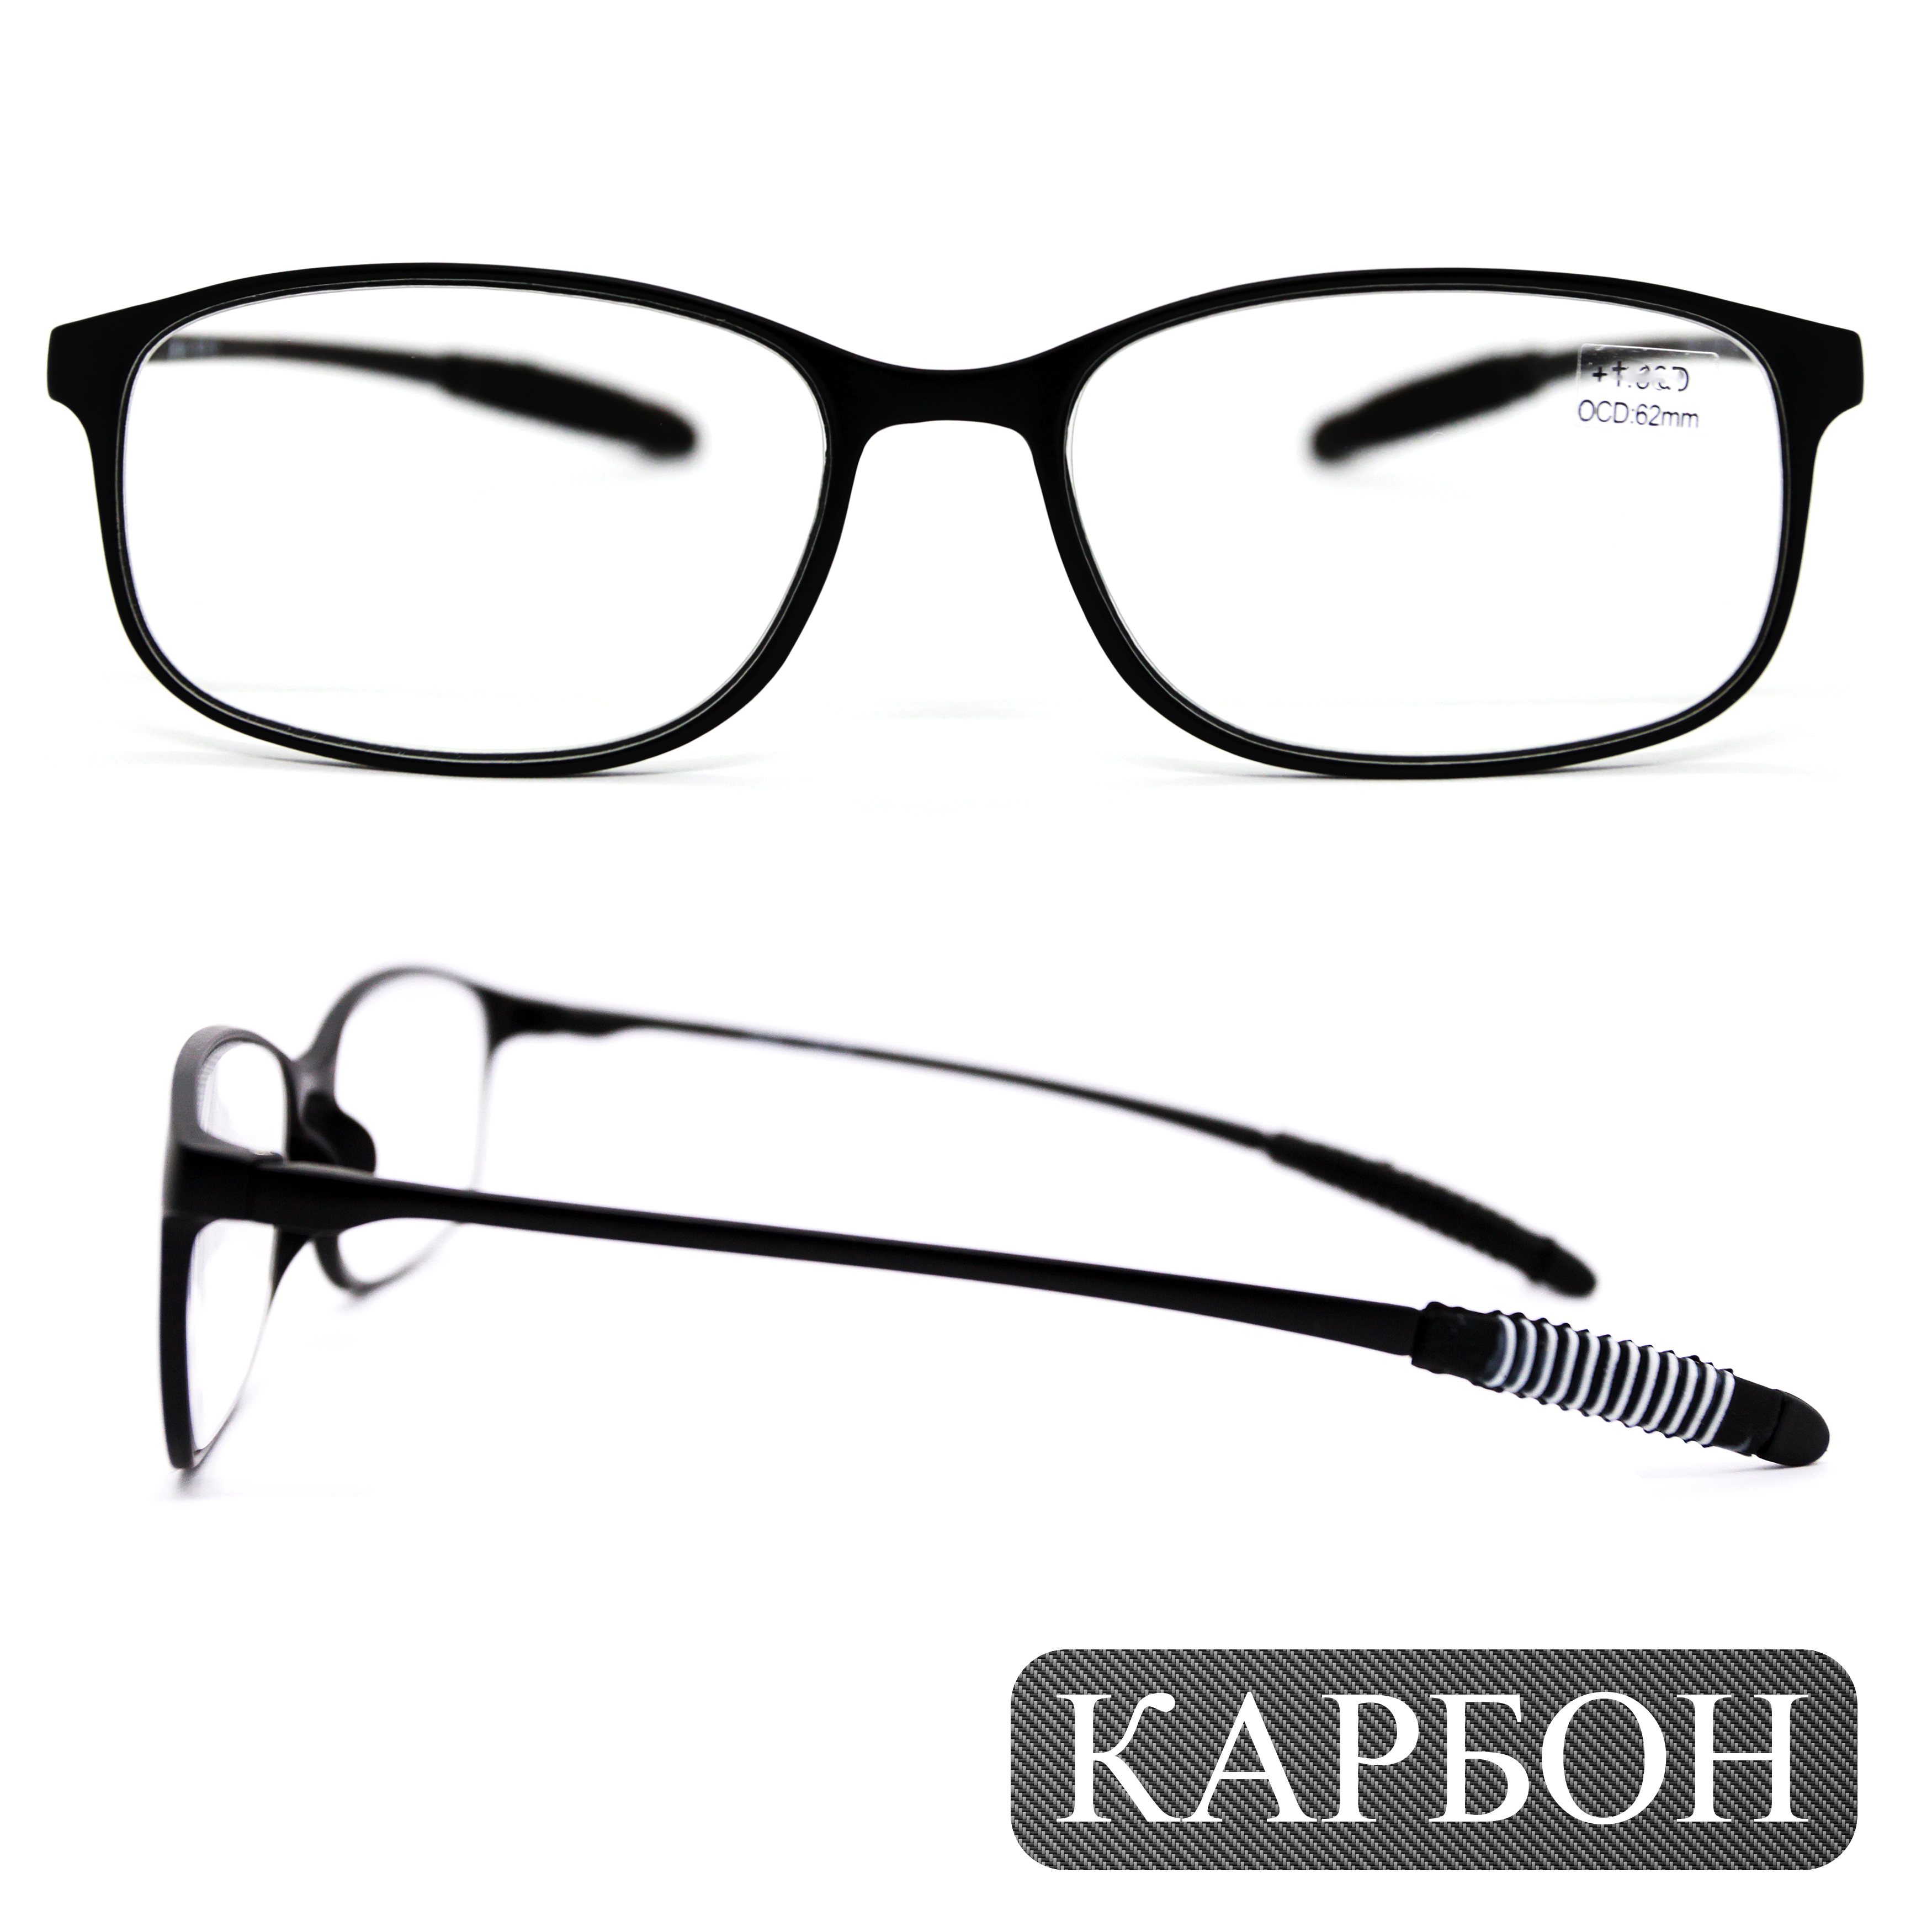 Готовые очки карбоновые TR259 +1,50, без футляра, черный, РЦ 62-64